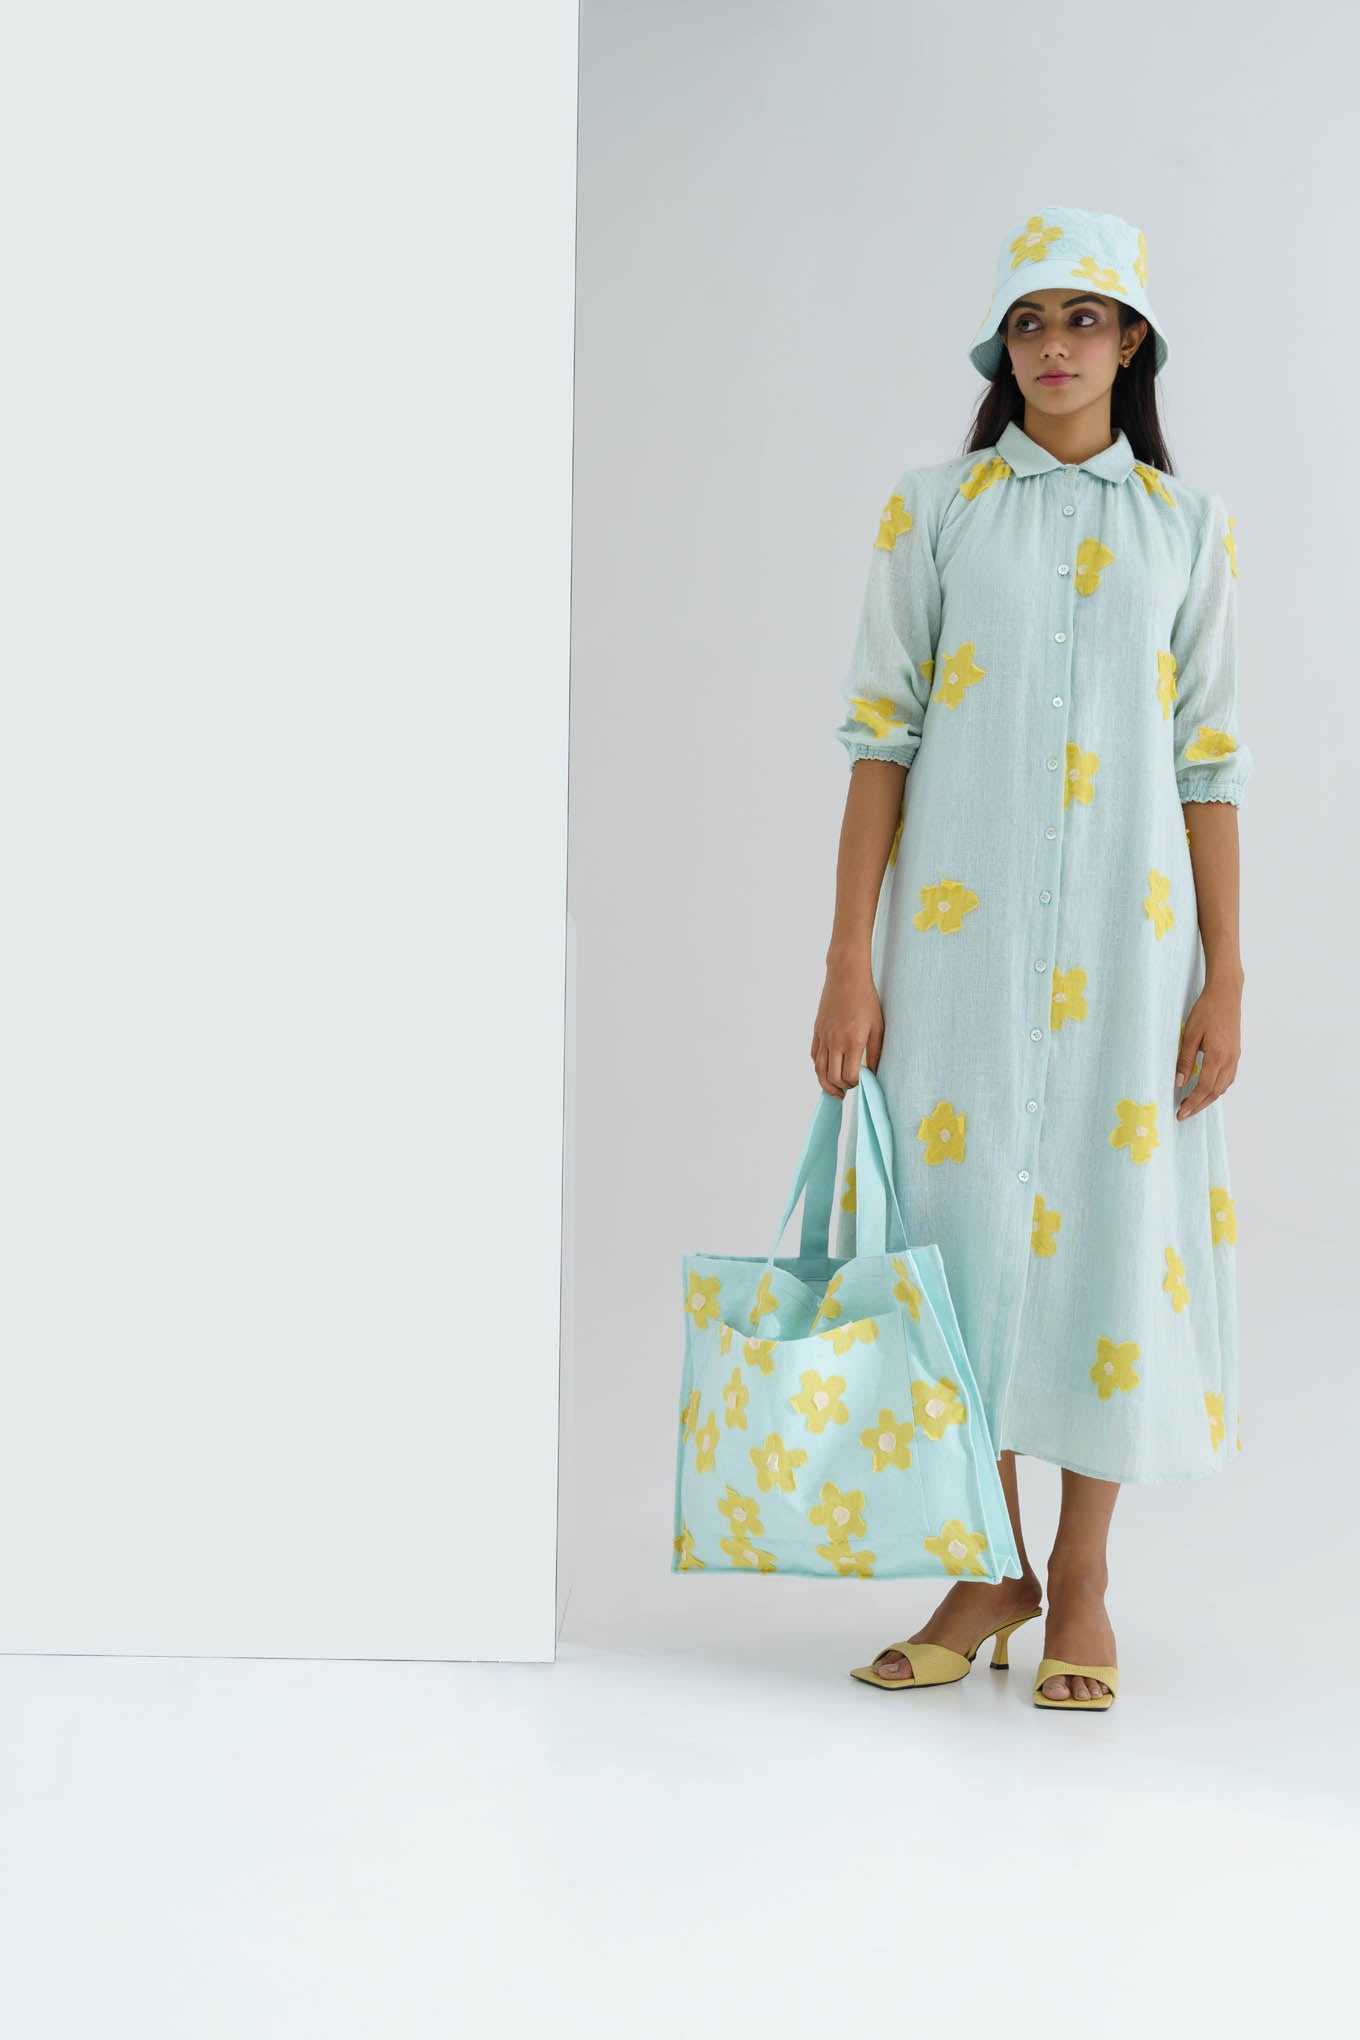 Lemonade dress